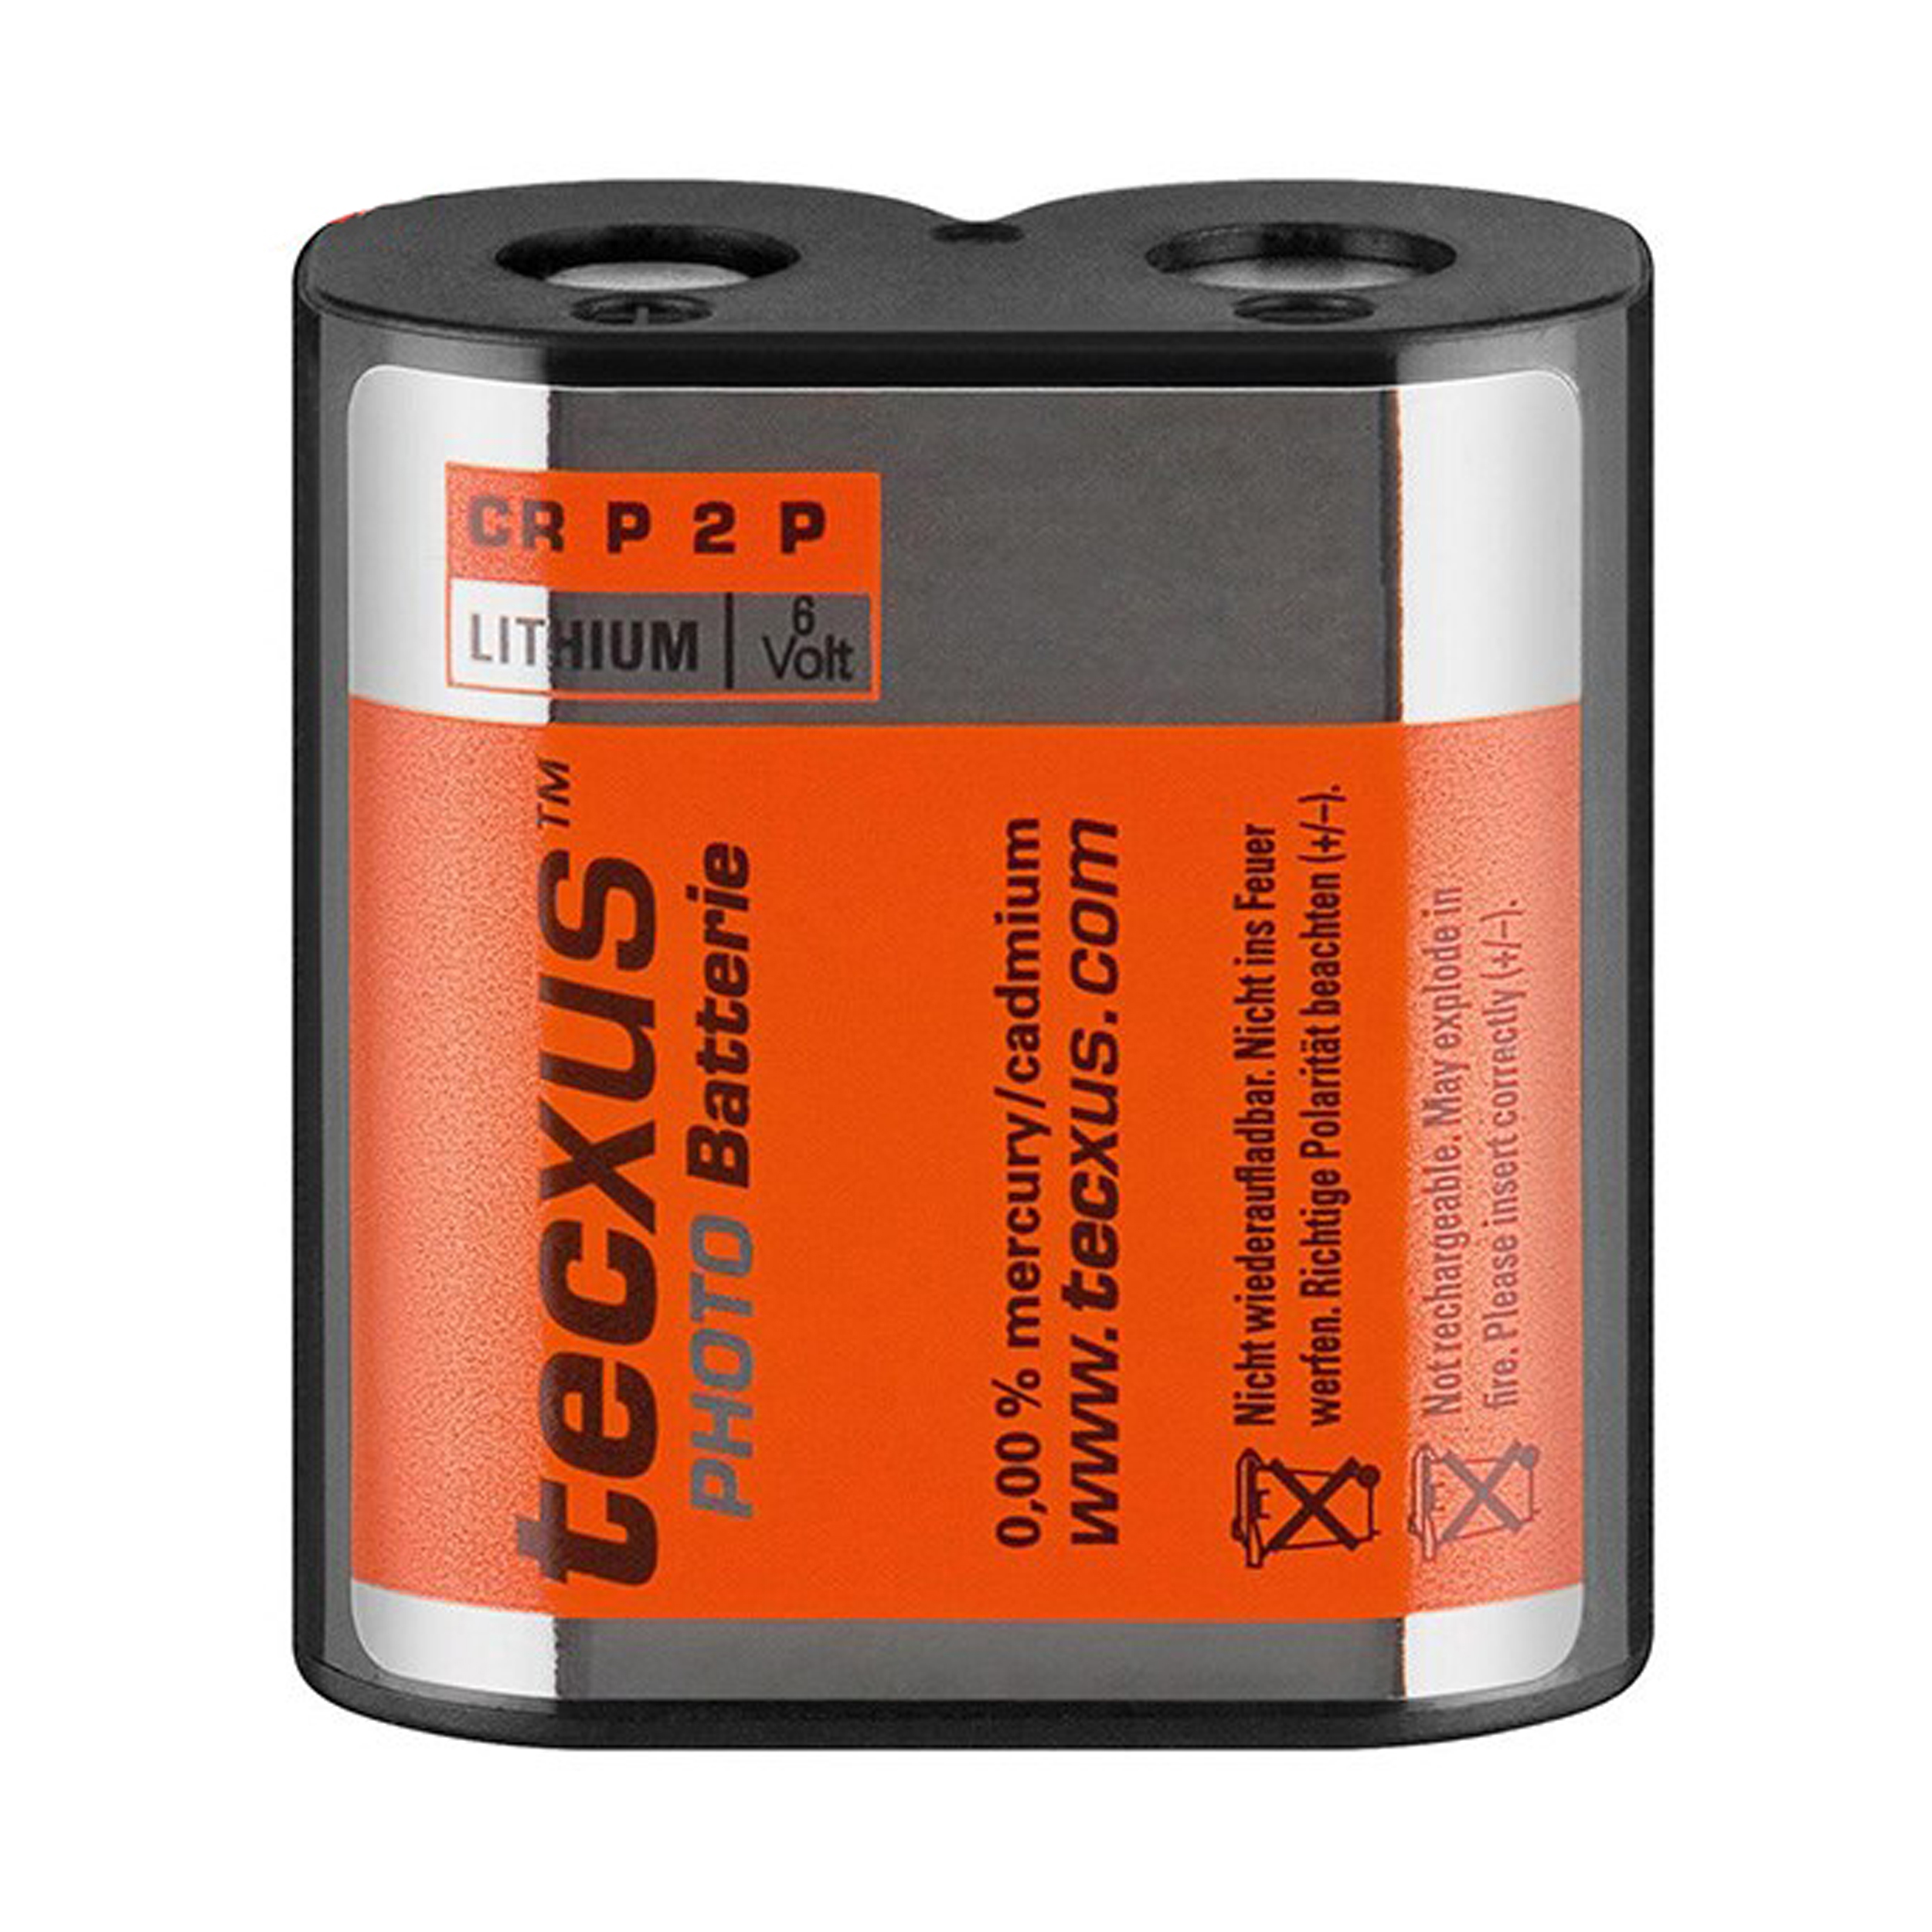 باتری CRP2P تکساس مدل Photo Batteries